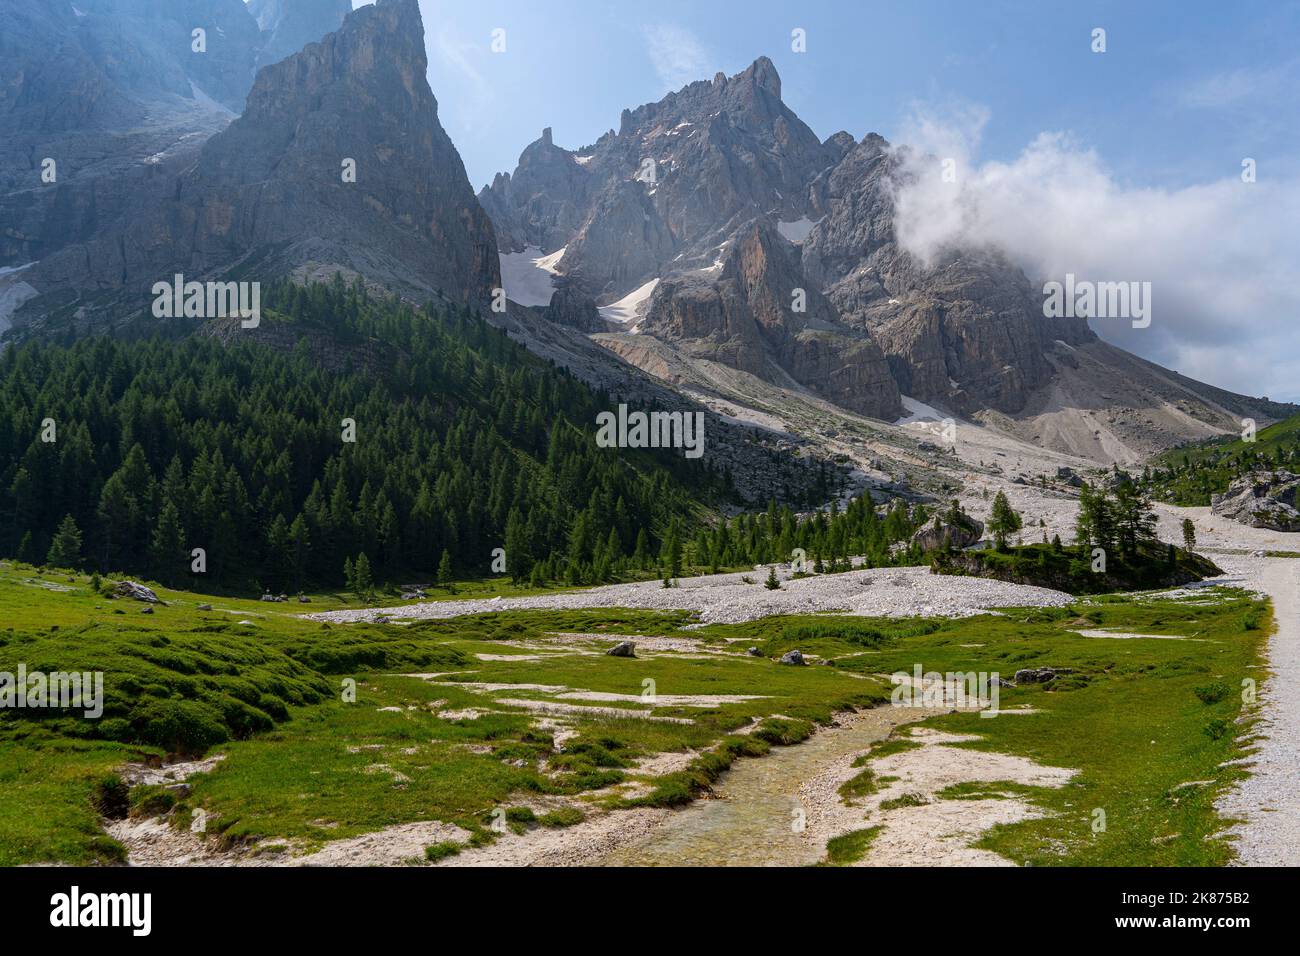 Cimon della pala in estate, Val Venegia, Parco pale di San Martino, Dolomiti, Trentino, Italia, Europa Foto Stock